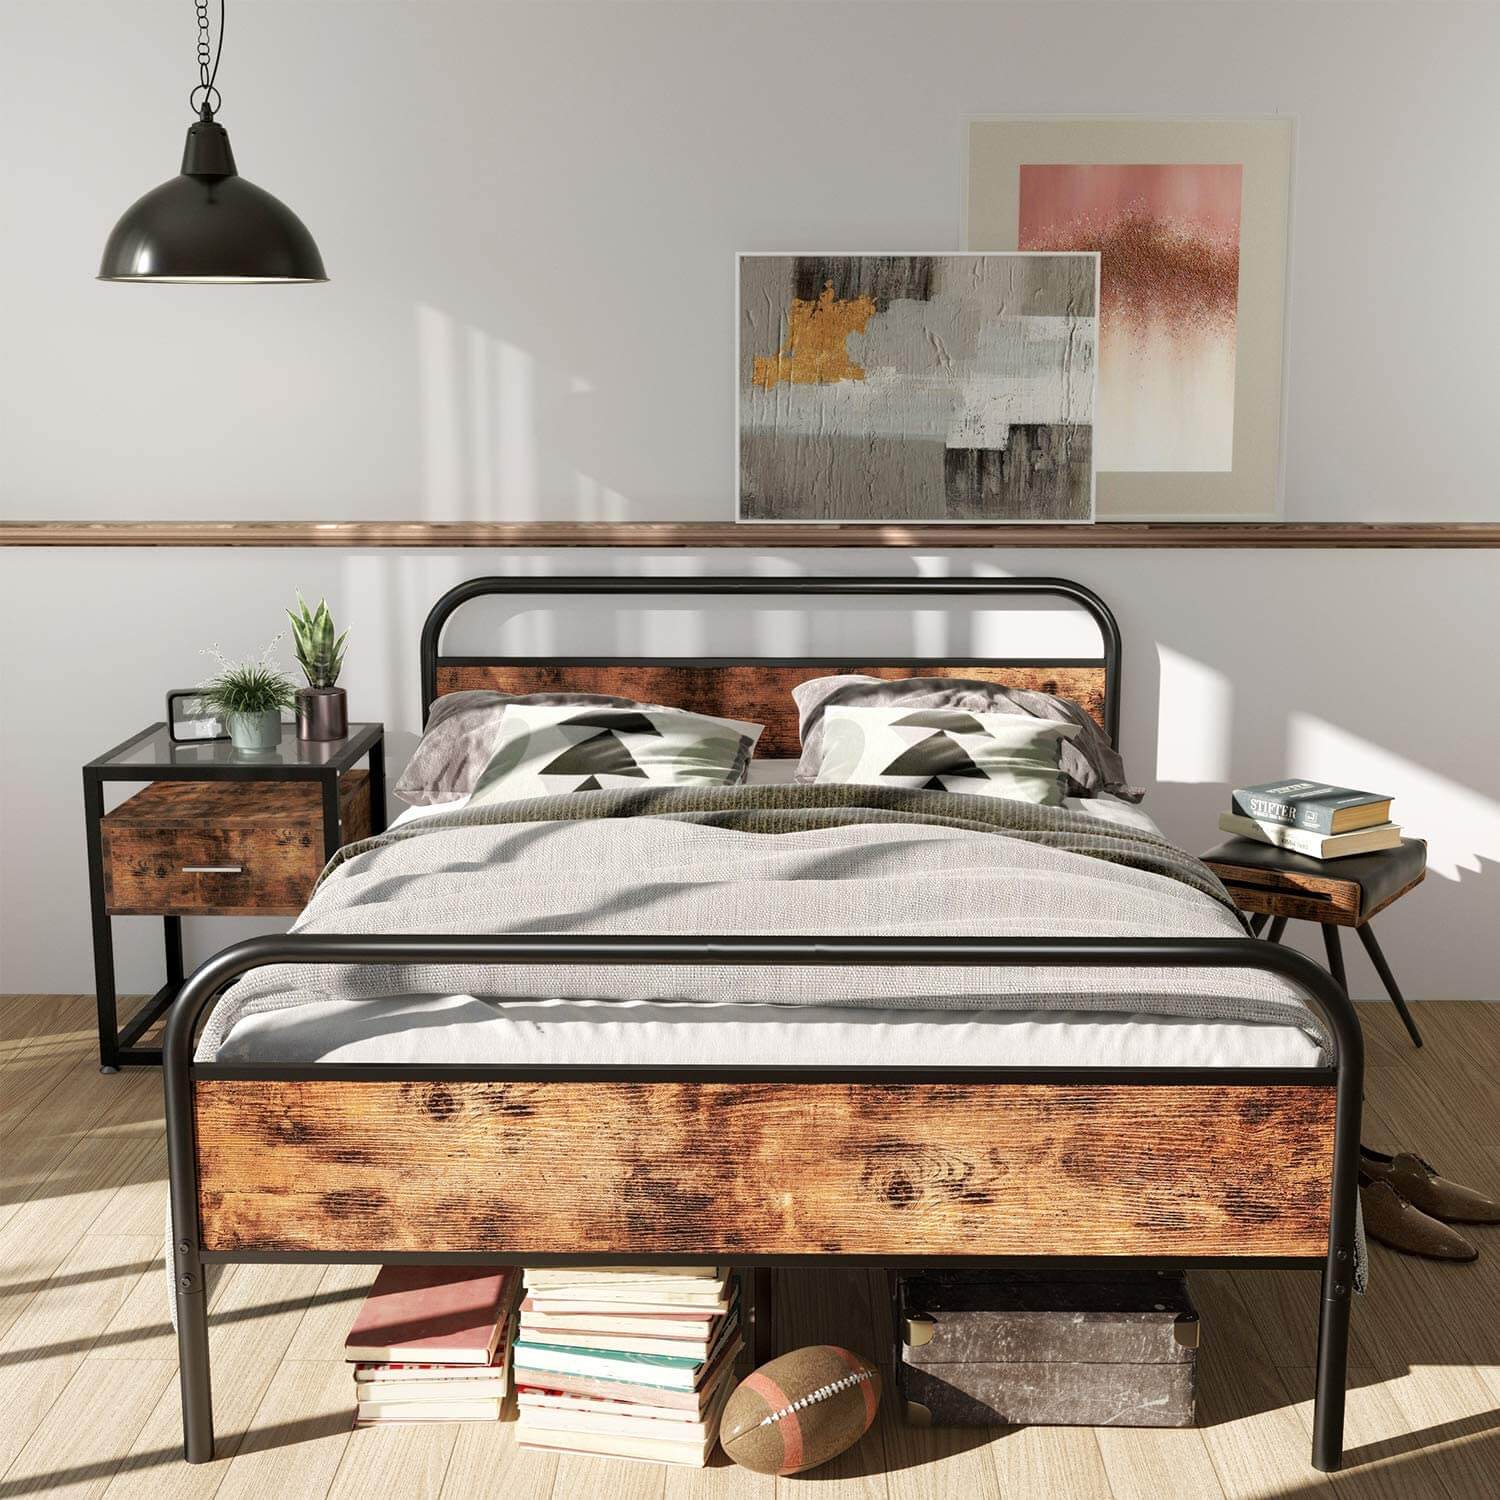 #12. Thiết kế giường ngủ mang nét hiện đại nhưng vẫn giữ được sự ấm cúng